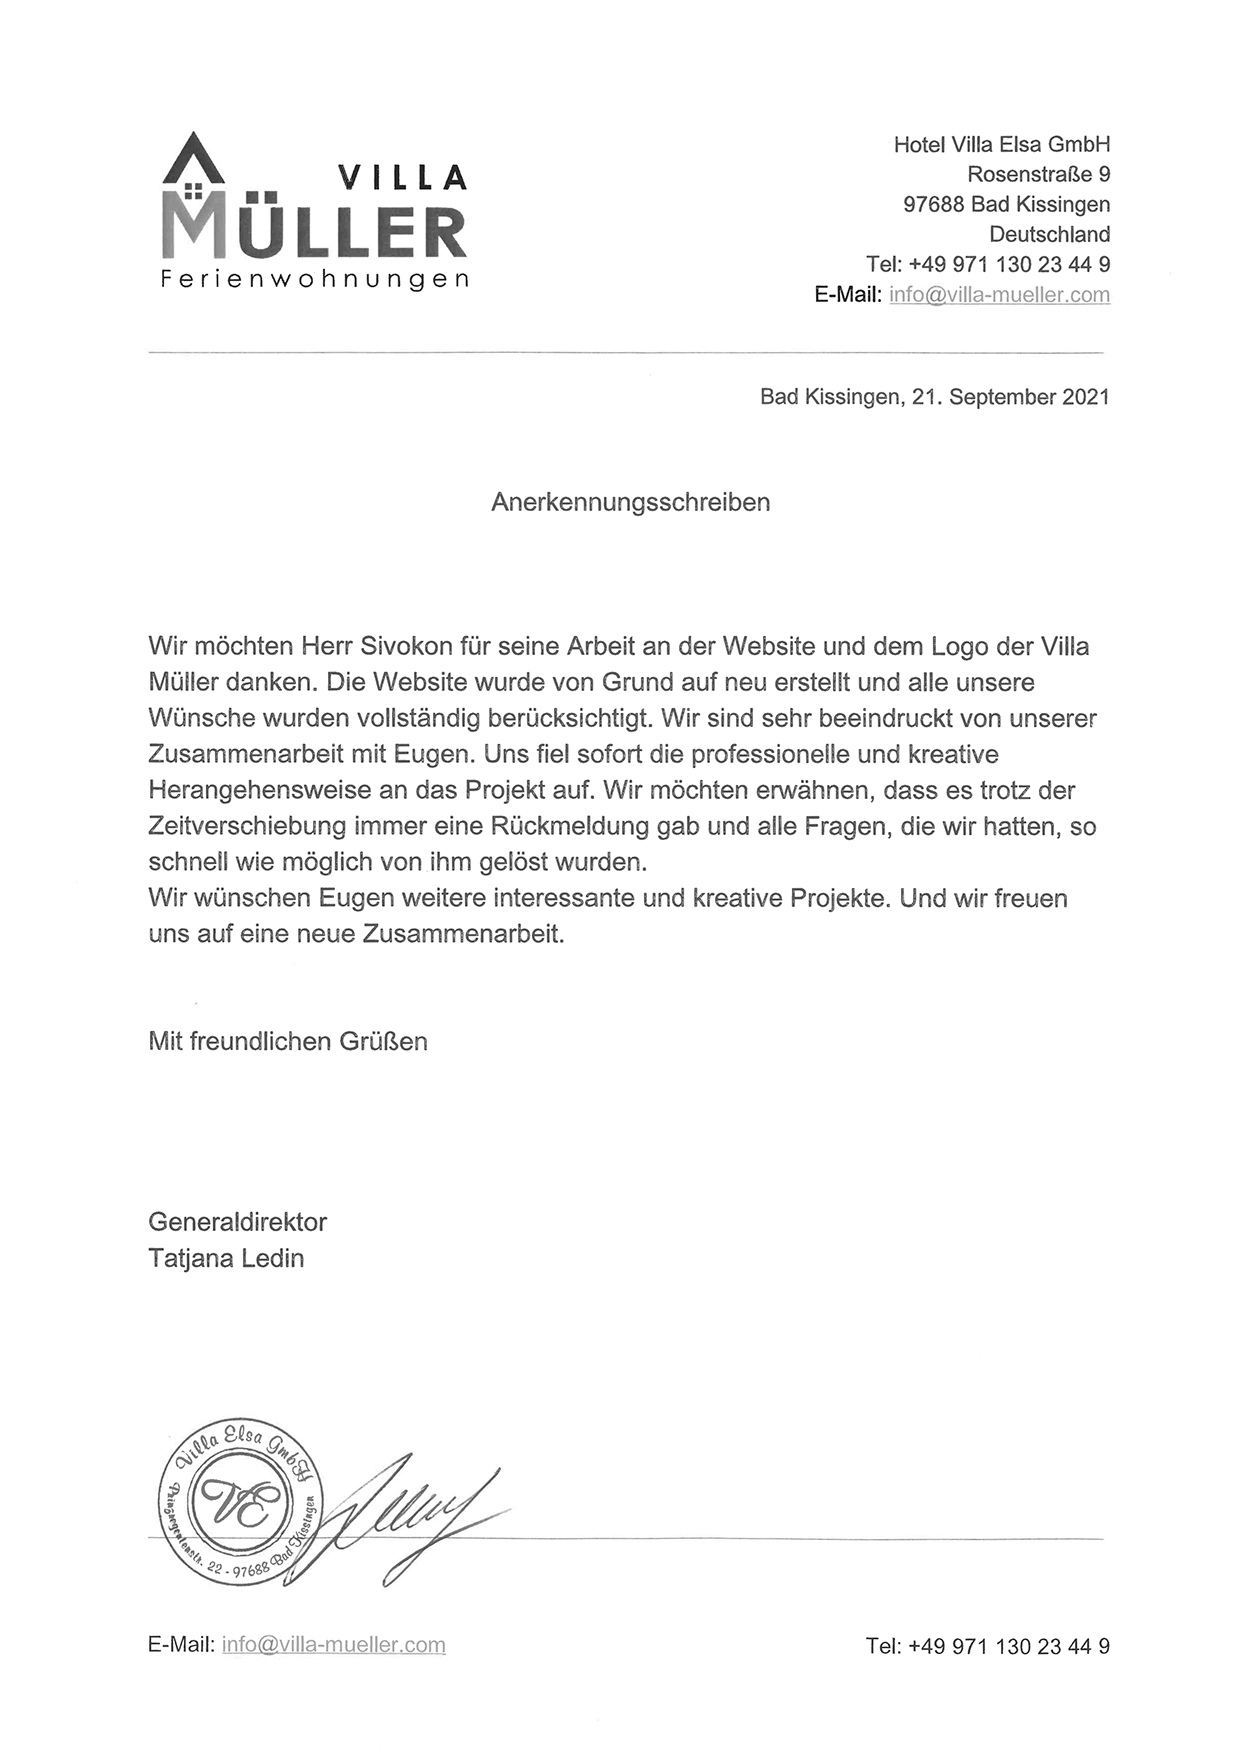 Благодарственное письмо от Villa Müller (Германия)